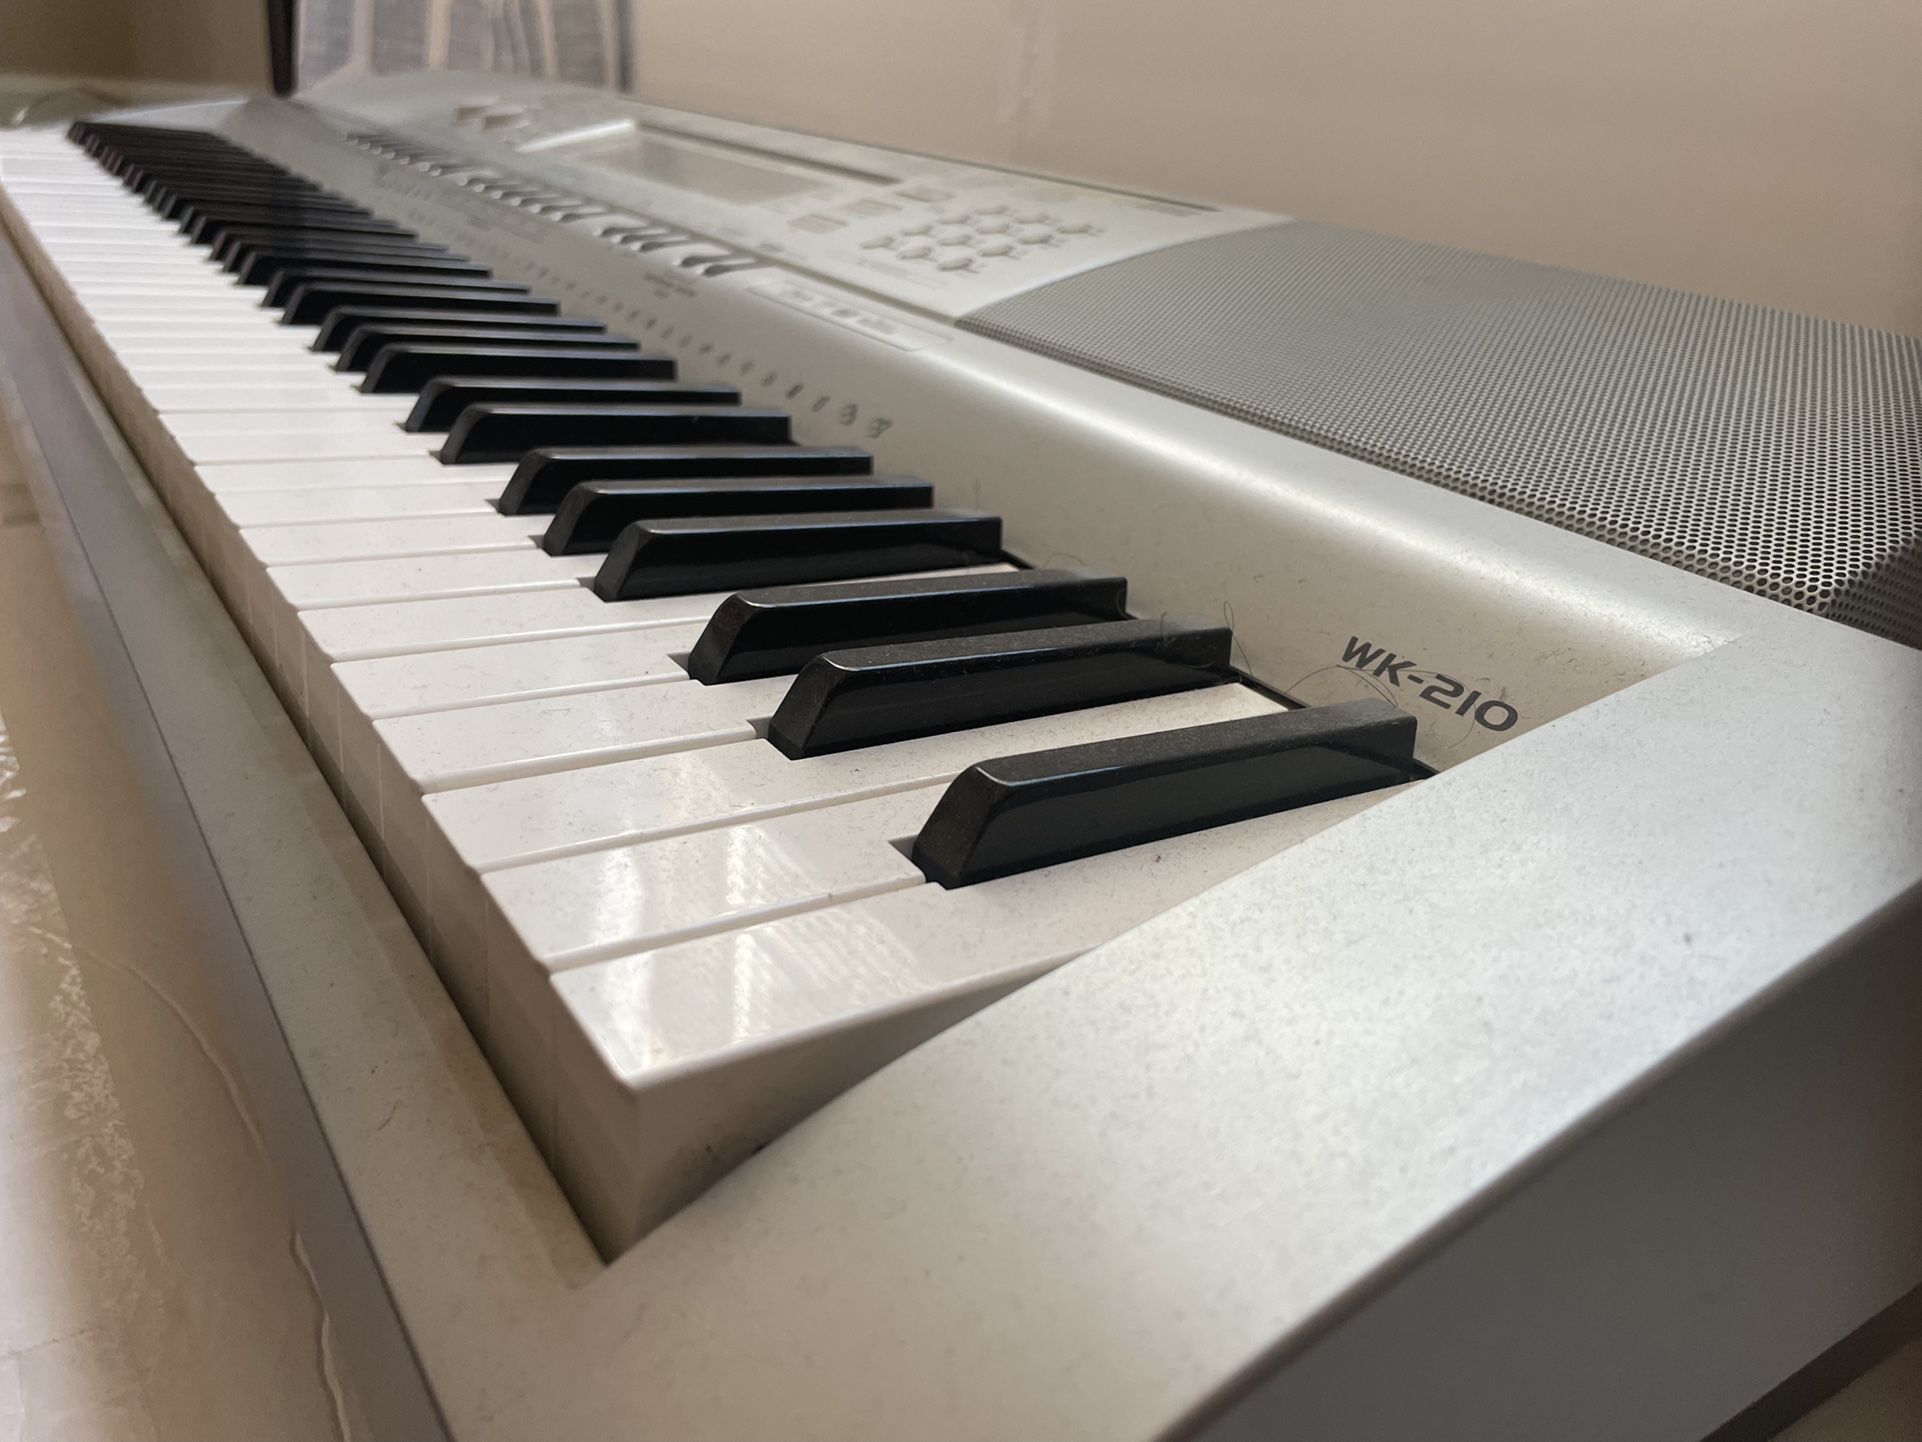 Piano Keyboard Casio WK-210y